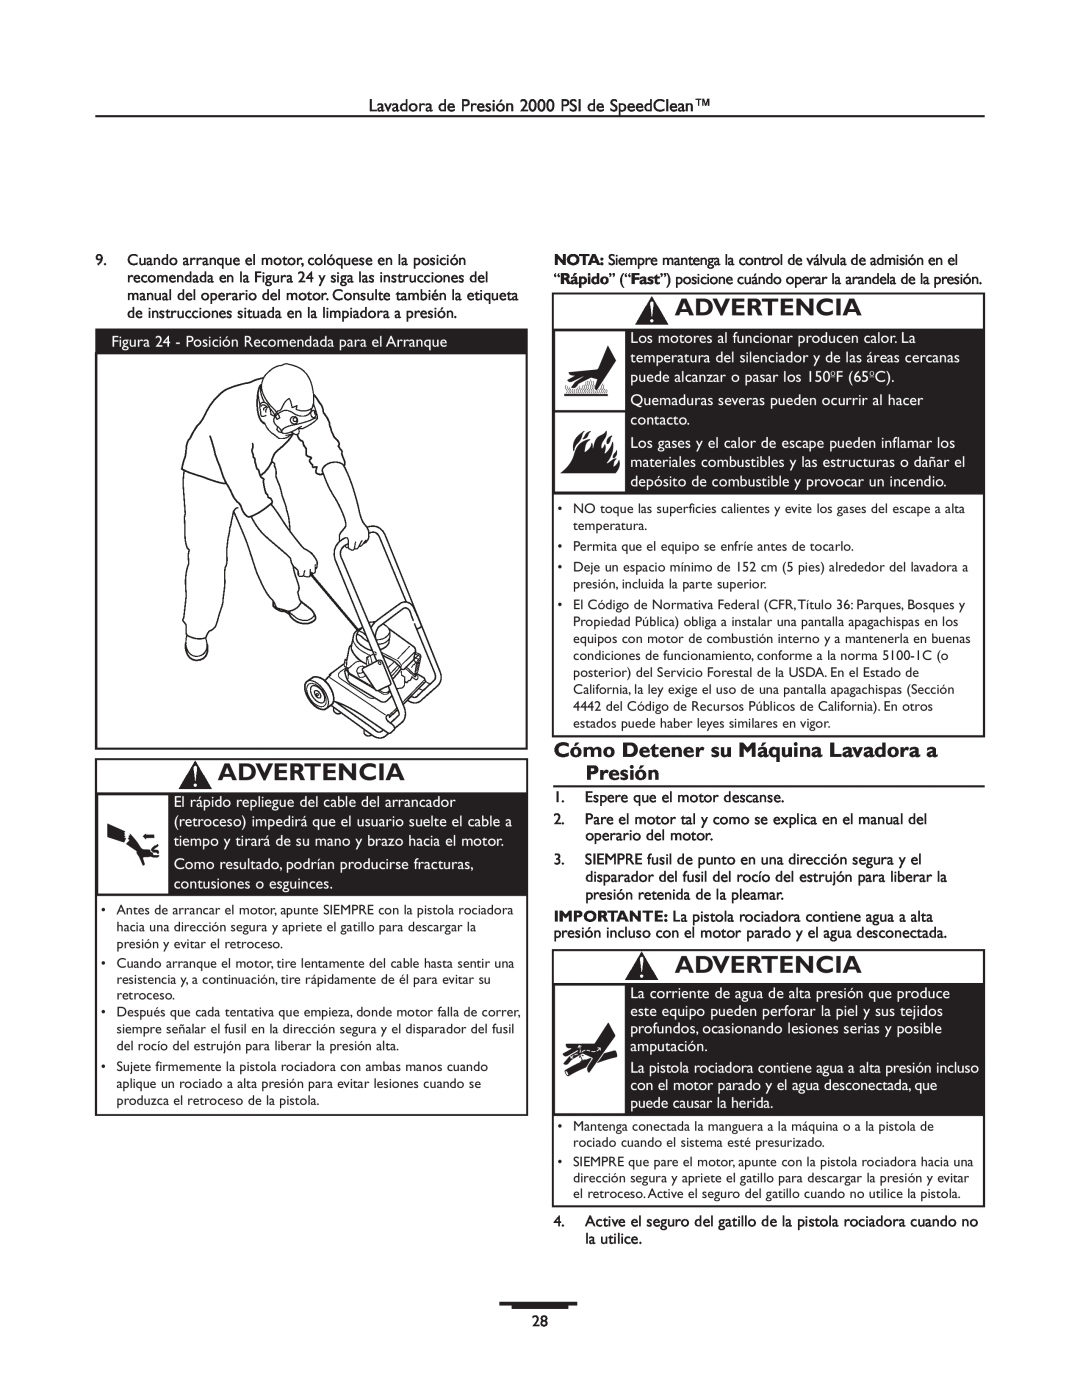 Briggs & Stratton 020238-0 operating instructions Cómo Detener su Máquina Lavadora a Presión, Advertencia 